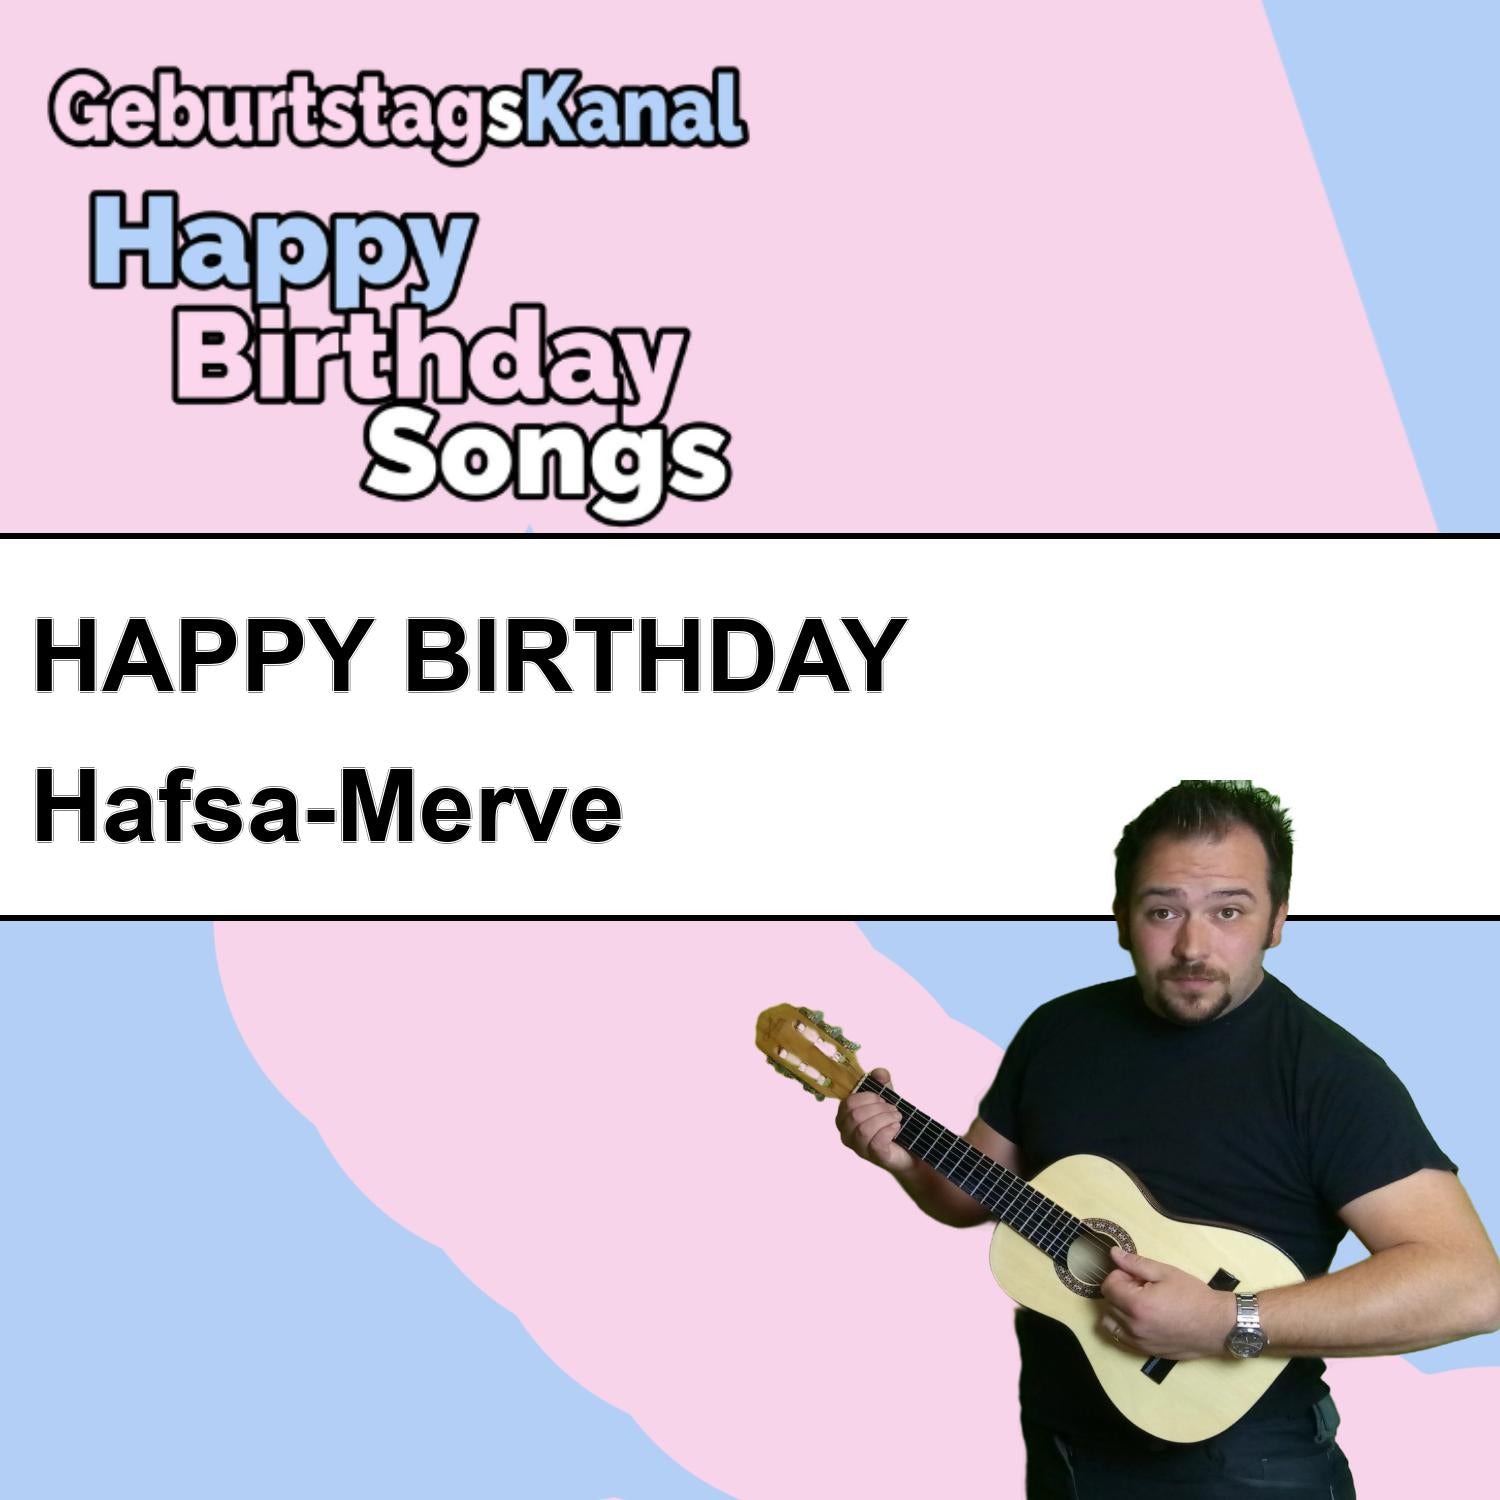 Produktbild Happy Birthday to you Hafsa-Merve mit Wunschgrußbotschaft